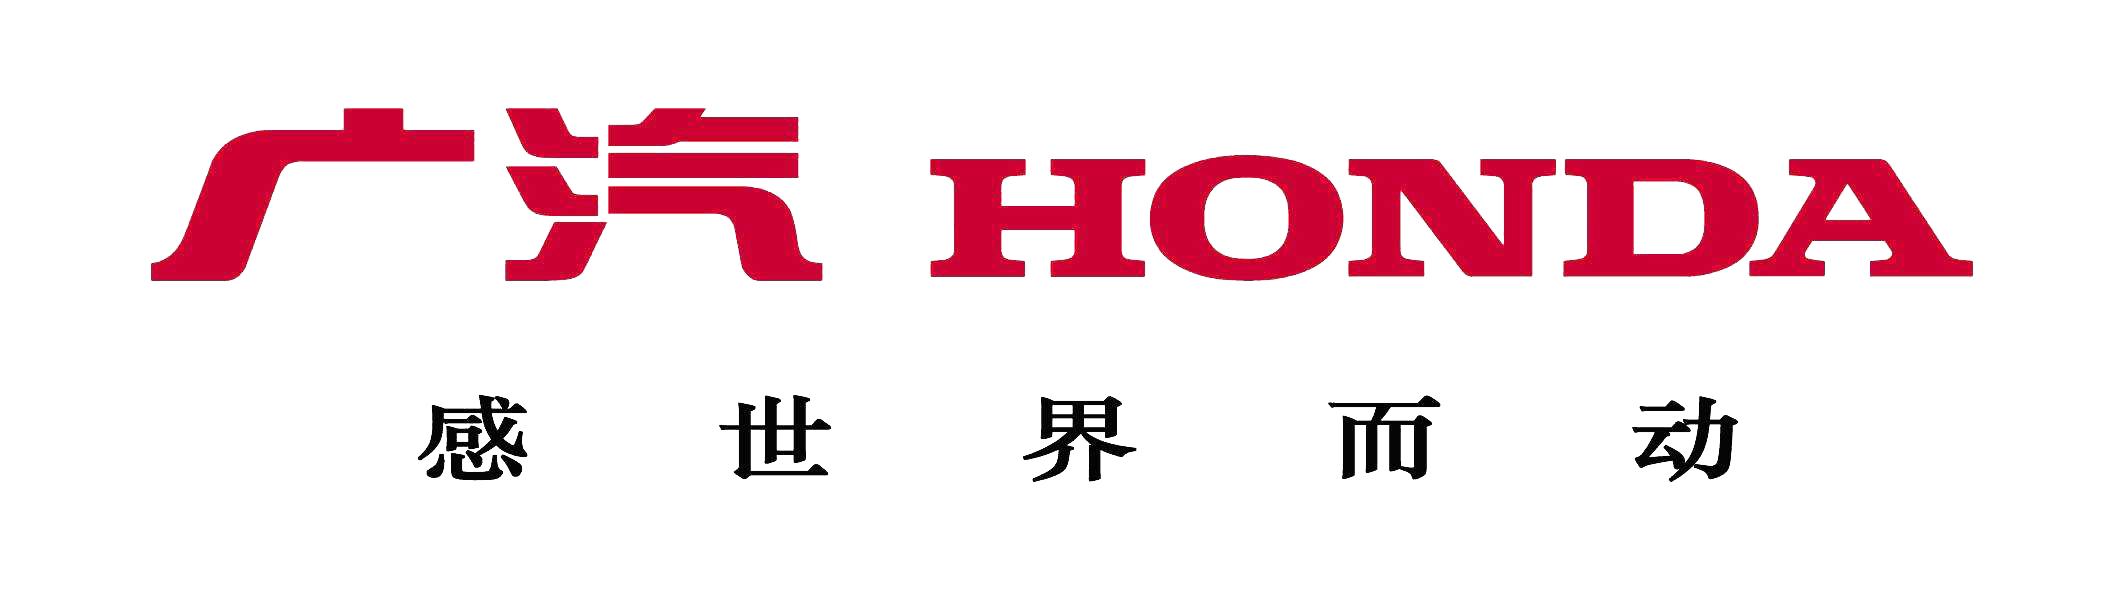 世界五百强商标logo图片